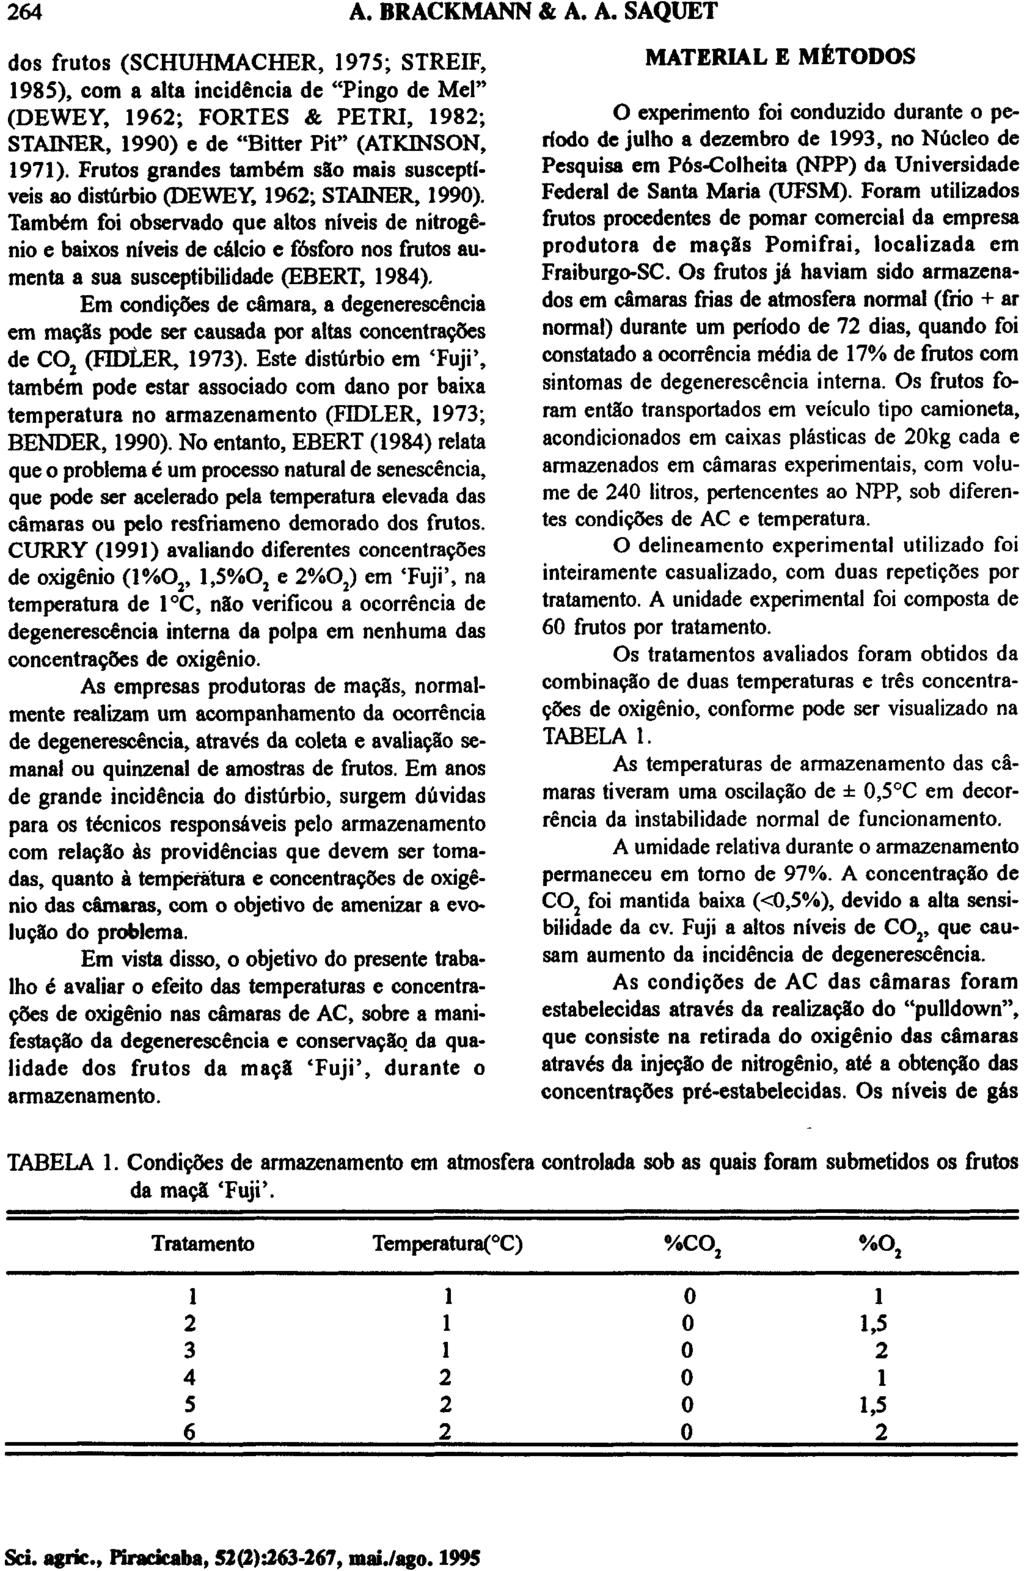 dos frutos (SCHUHMACHER, 1975; STREIF, 1985), com a alta incidência de "Pingo de Mel" (DEWEY, 1962; FORTES & PETRI, 1982; STAINER, 1990) e de "Bitter Pit" (ATKINSON, 1971).